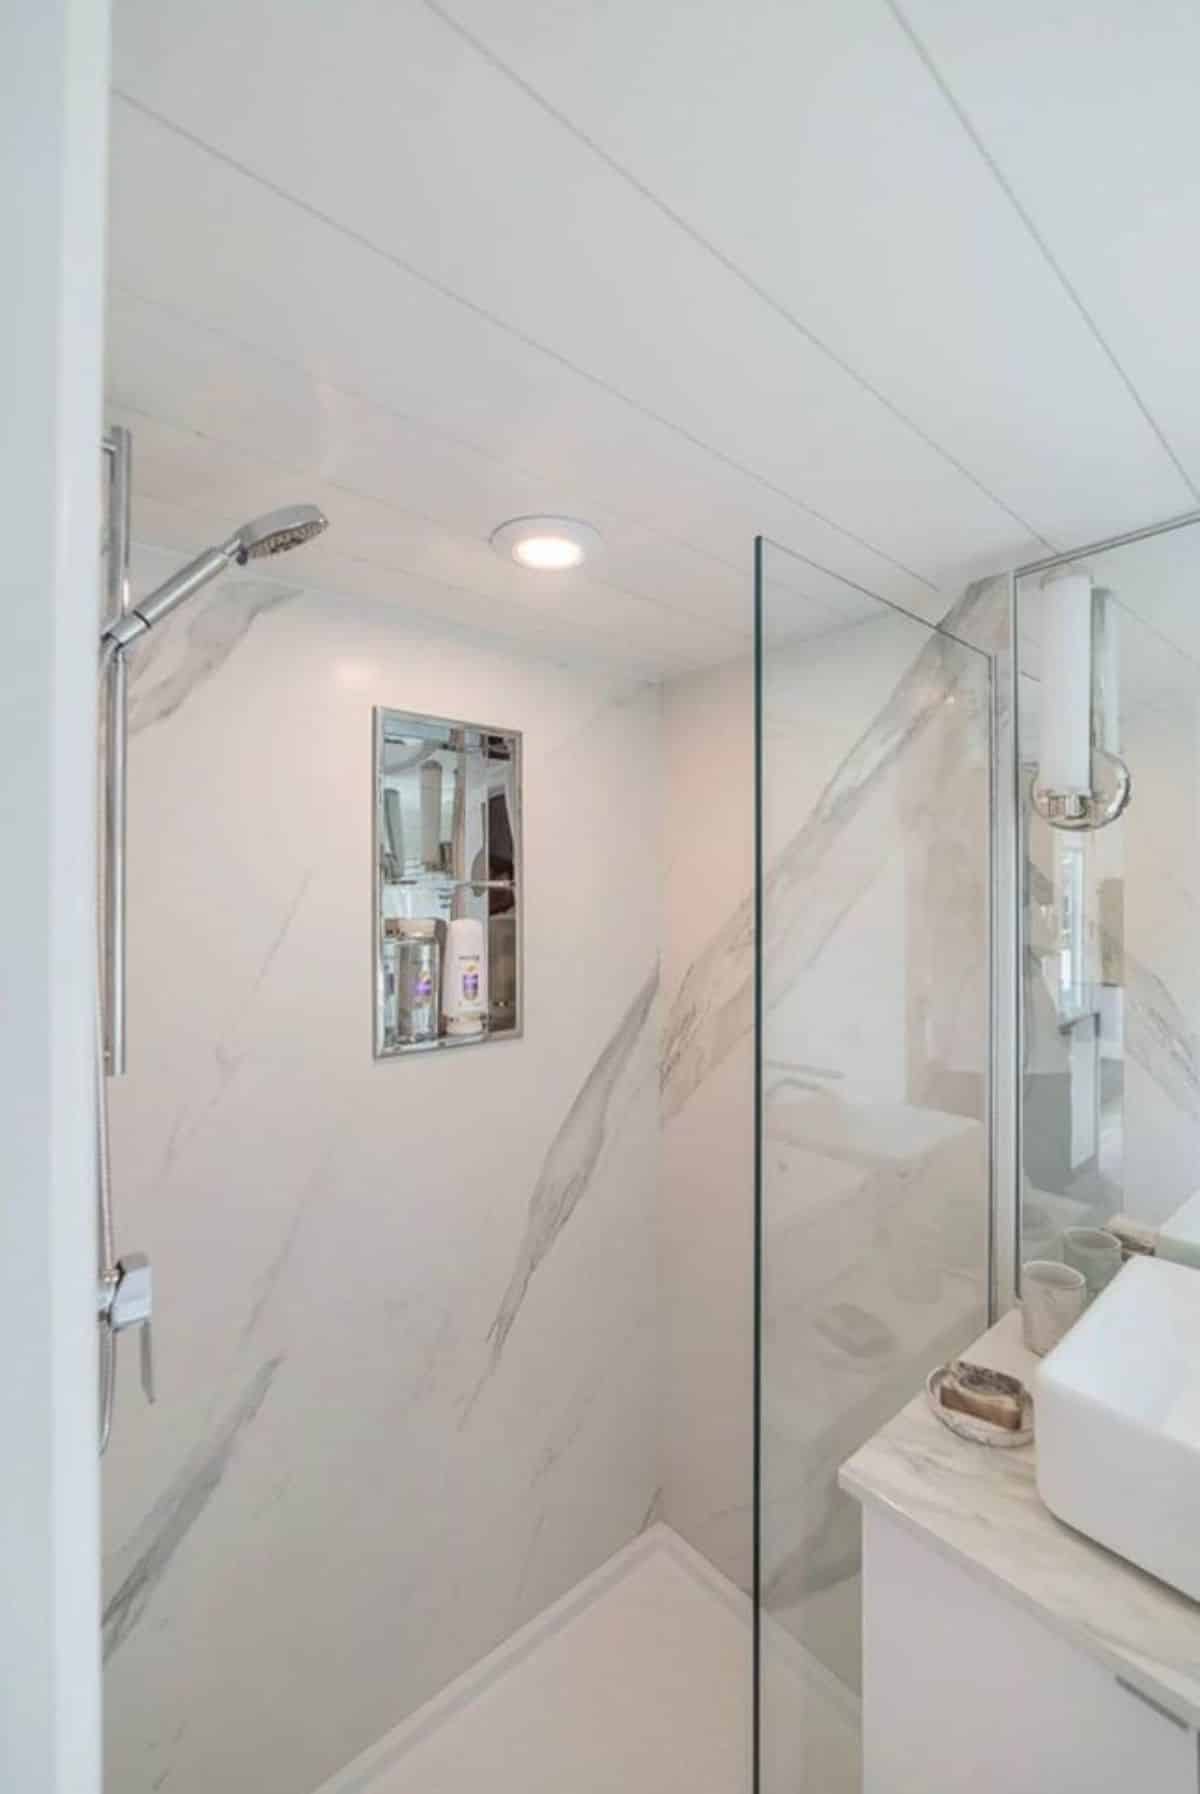 separate shower area with glass door in bathroom area